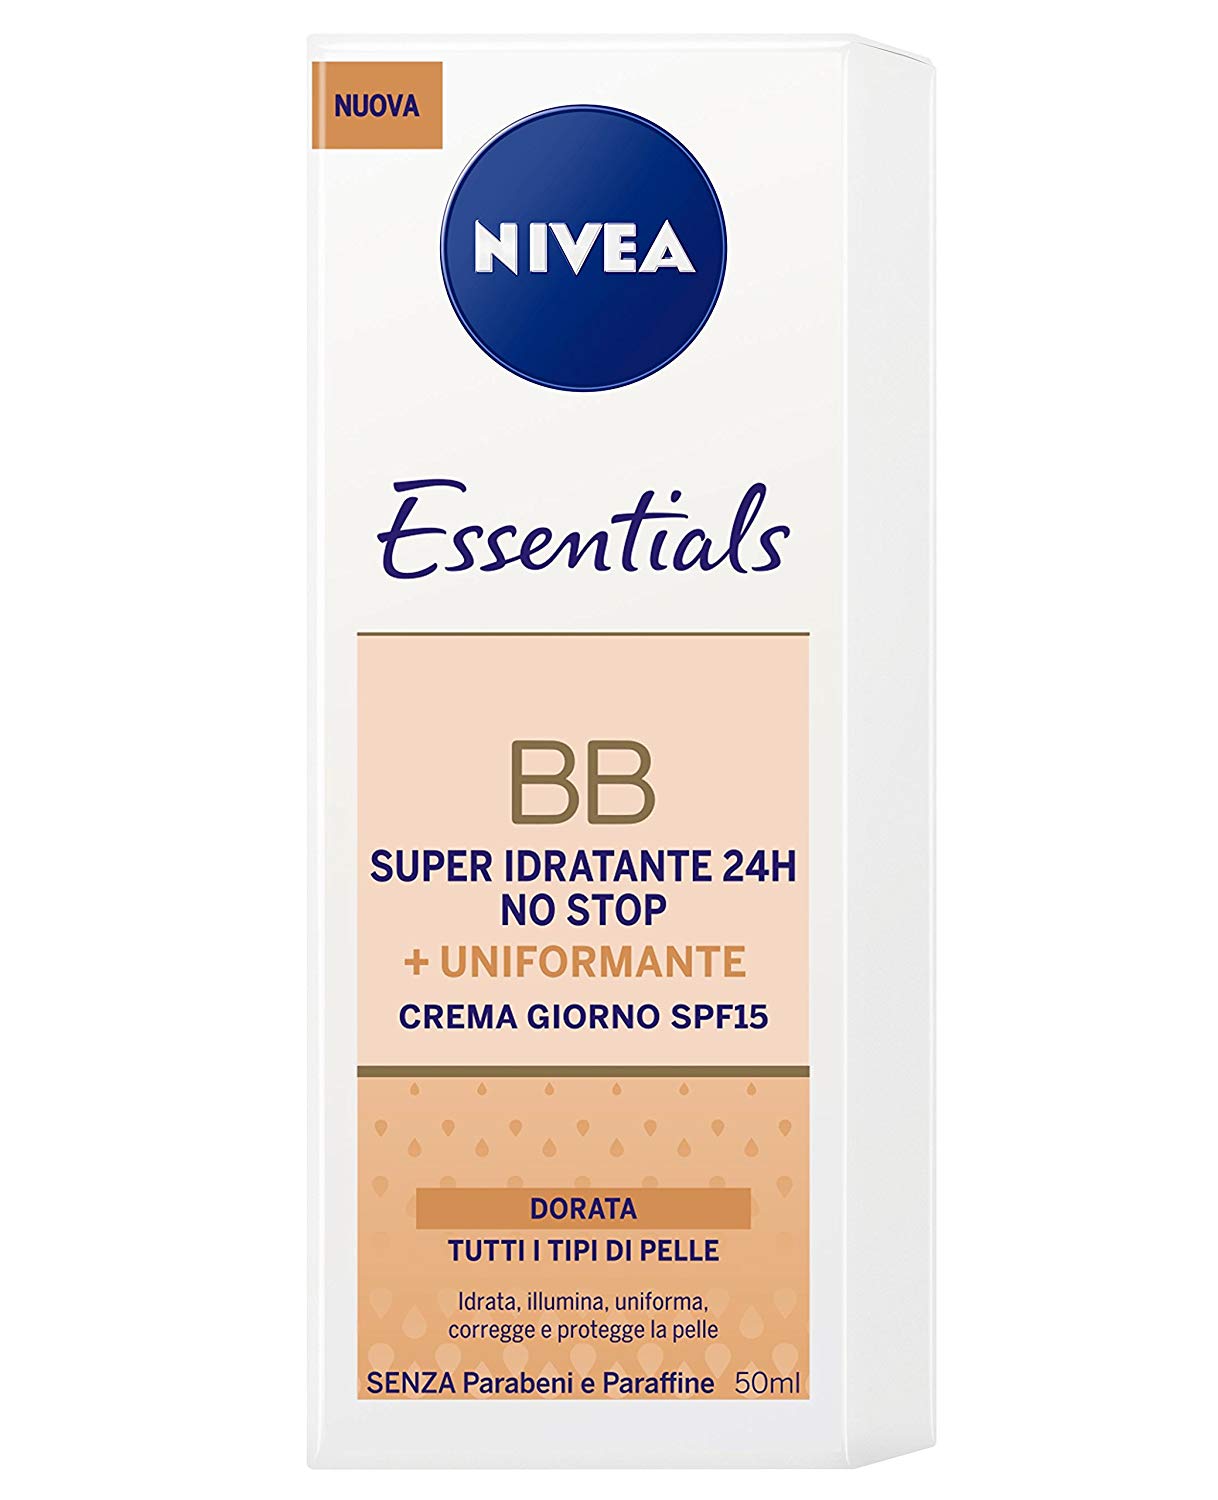 Nivea Essentials BB Cream Super Idratante 24H Uniformante Crema Giorno Viso SPF 15 Colore Dorato 50 ml